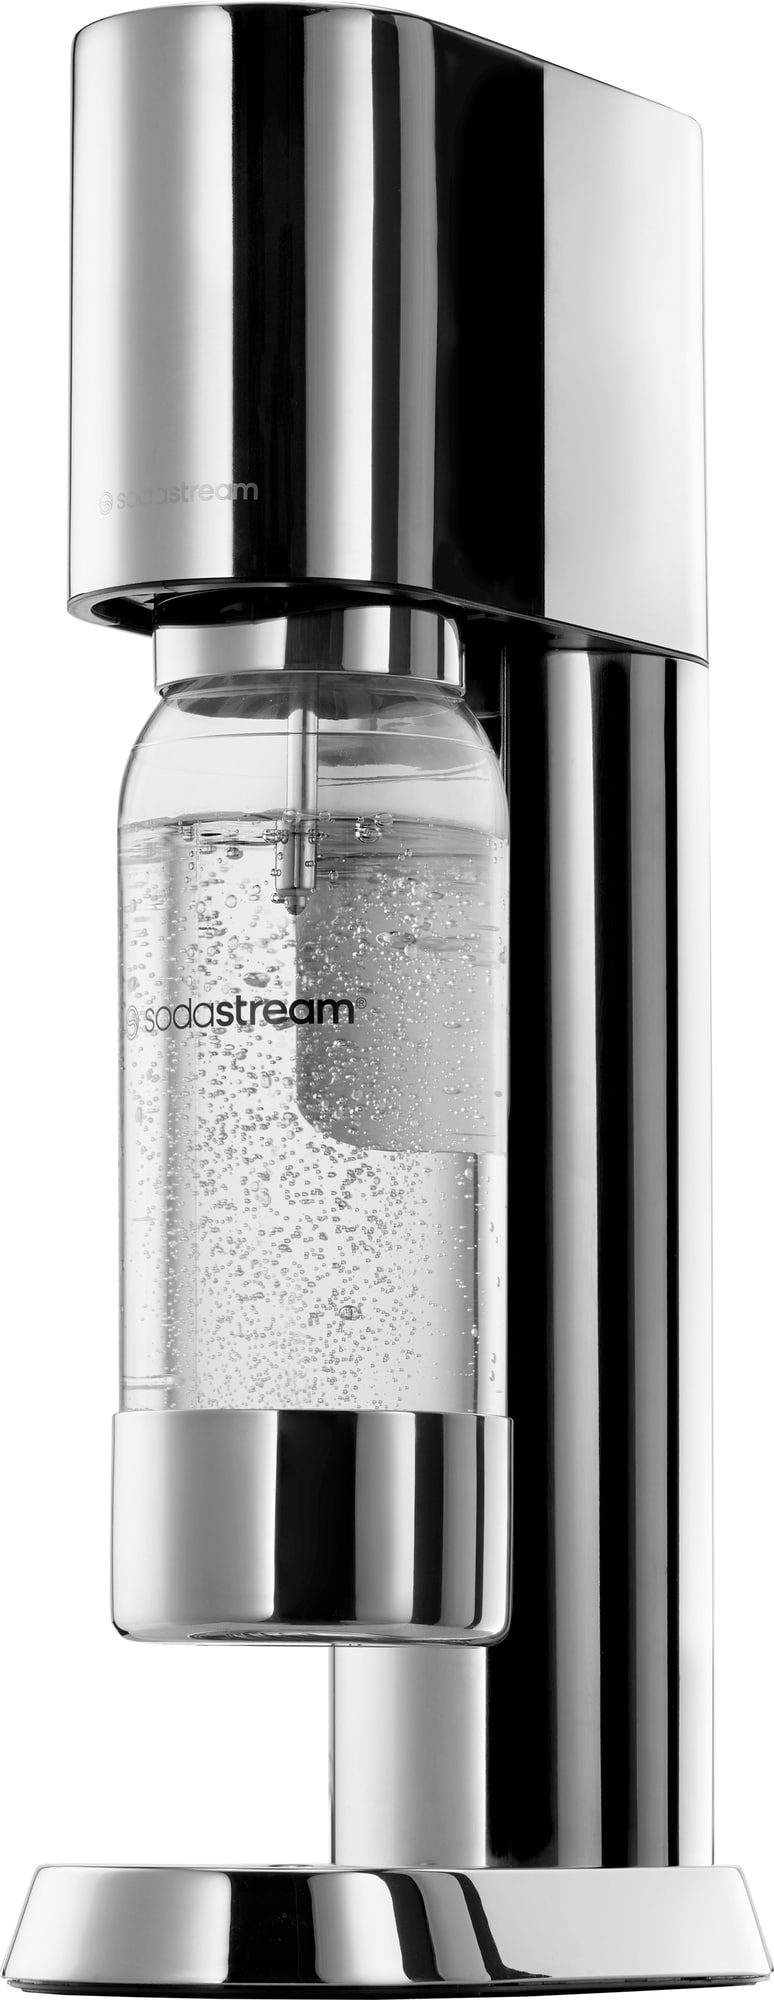 Billede af SodaStream ens sodavandsmaskine uden cylinder 1013601770